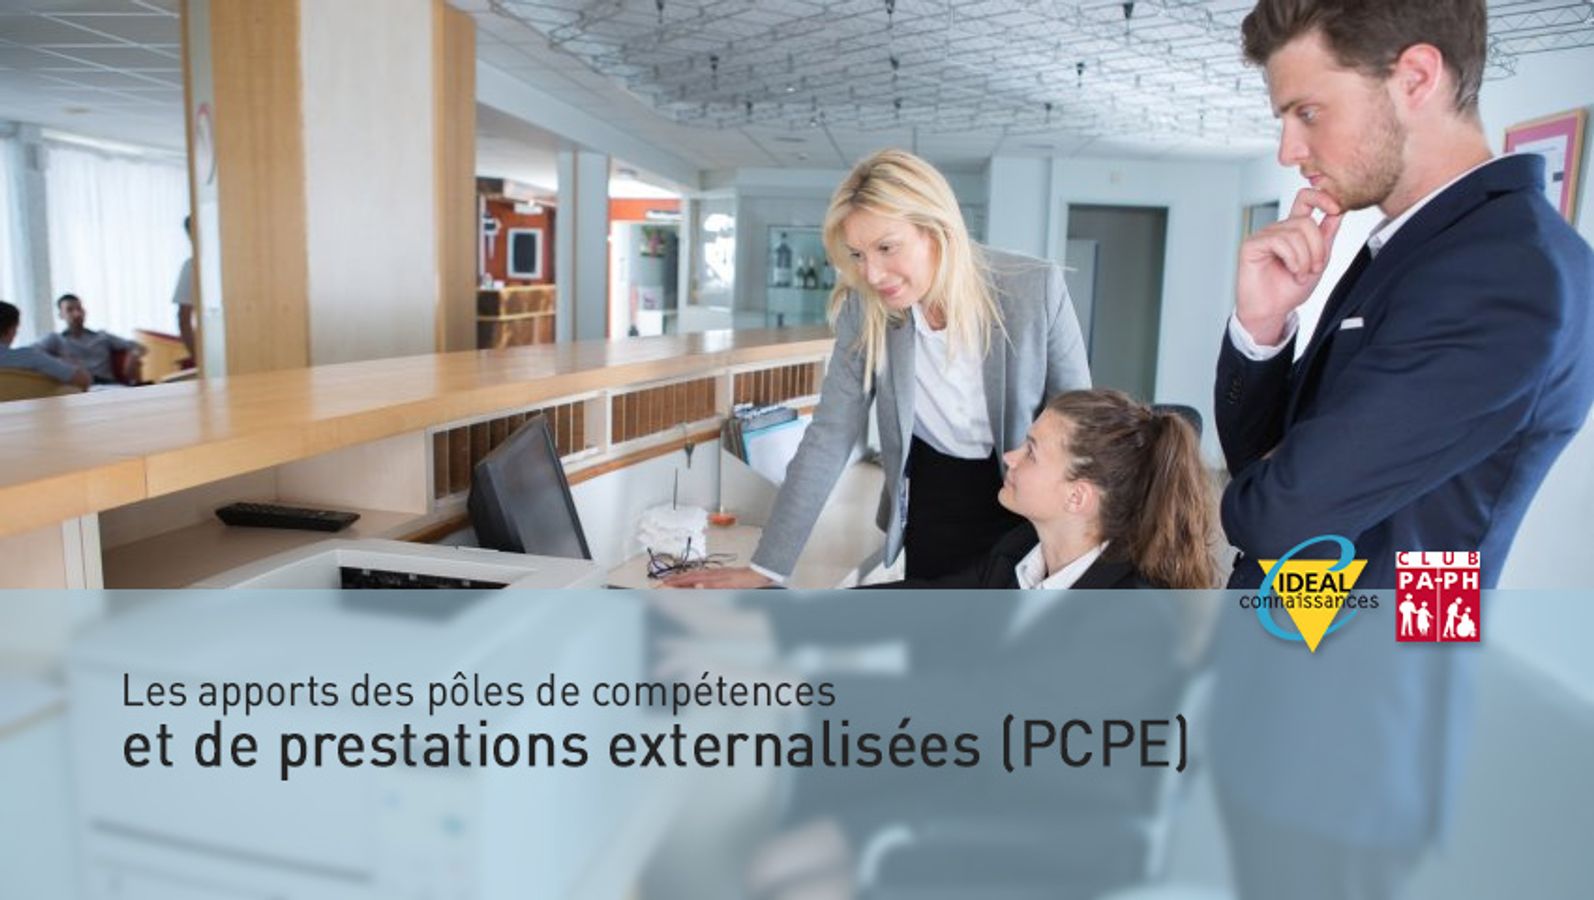 Les apports des pôles de compétences et de prestations externalisées (PCPE)